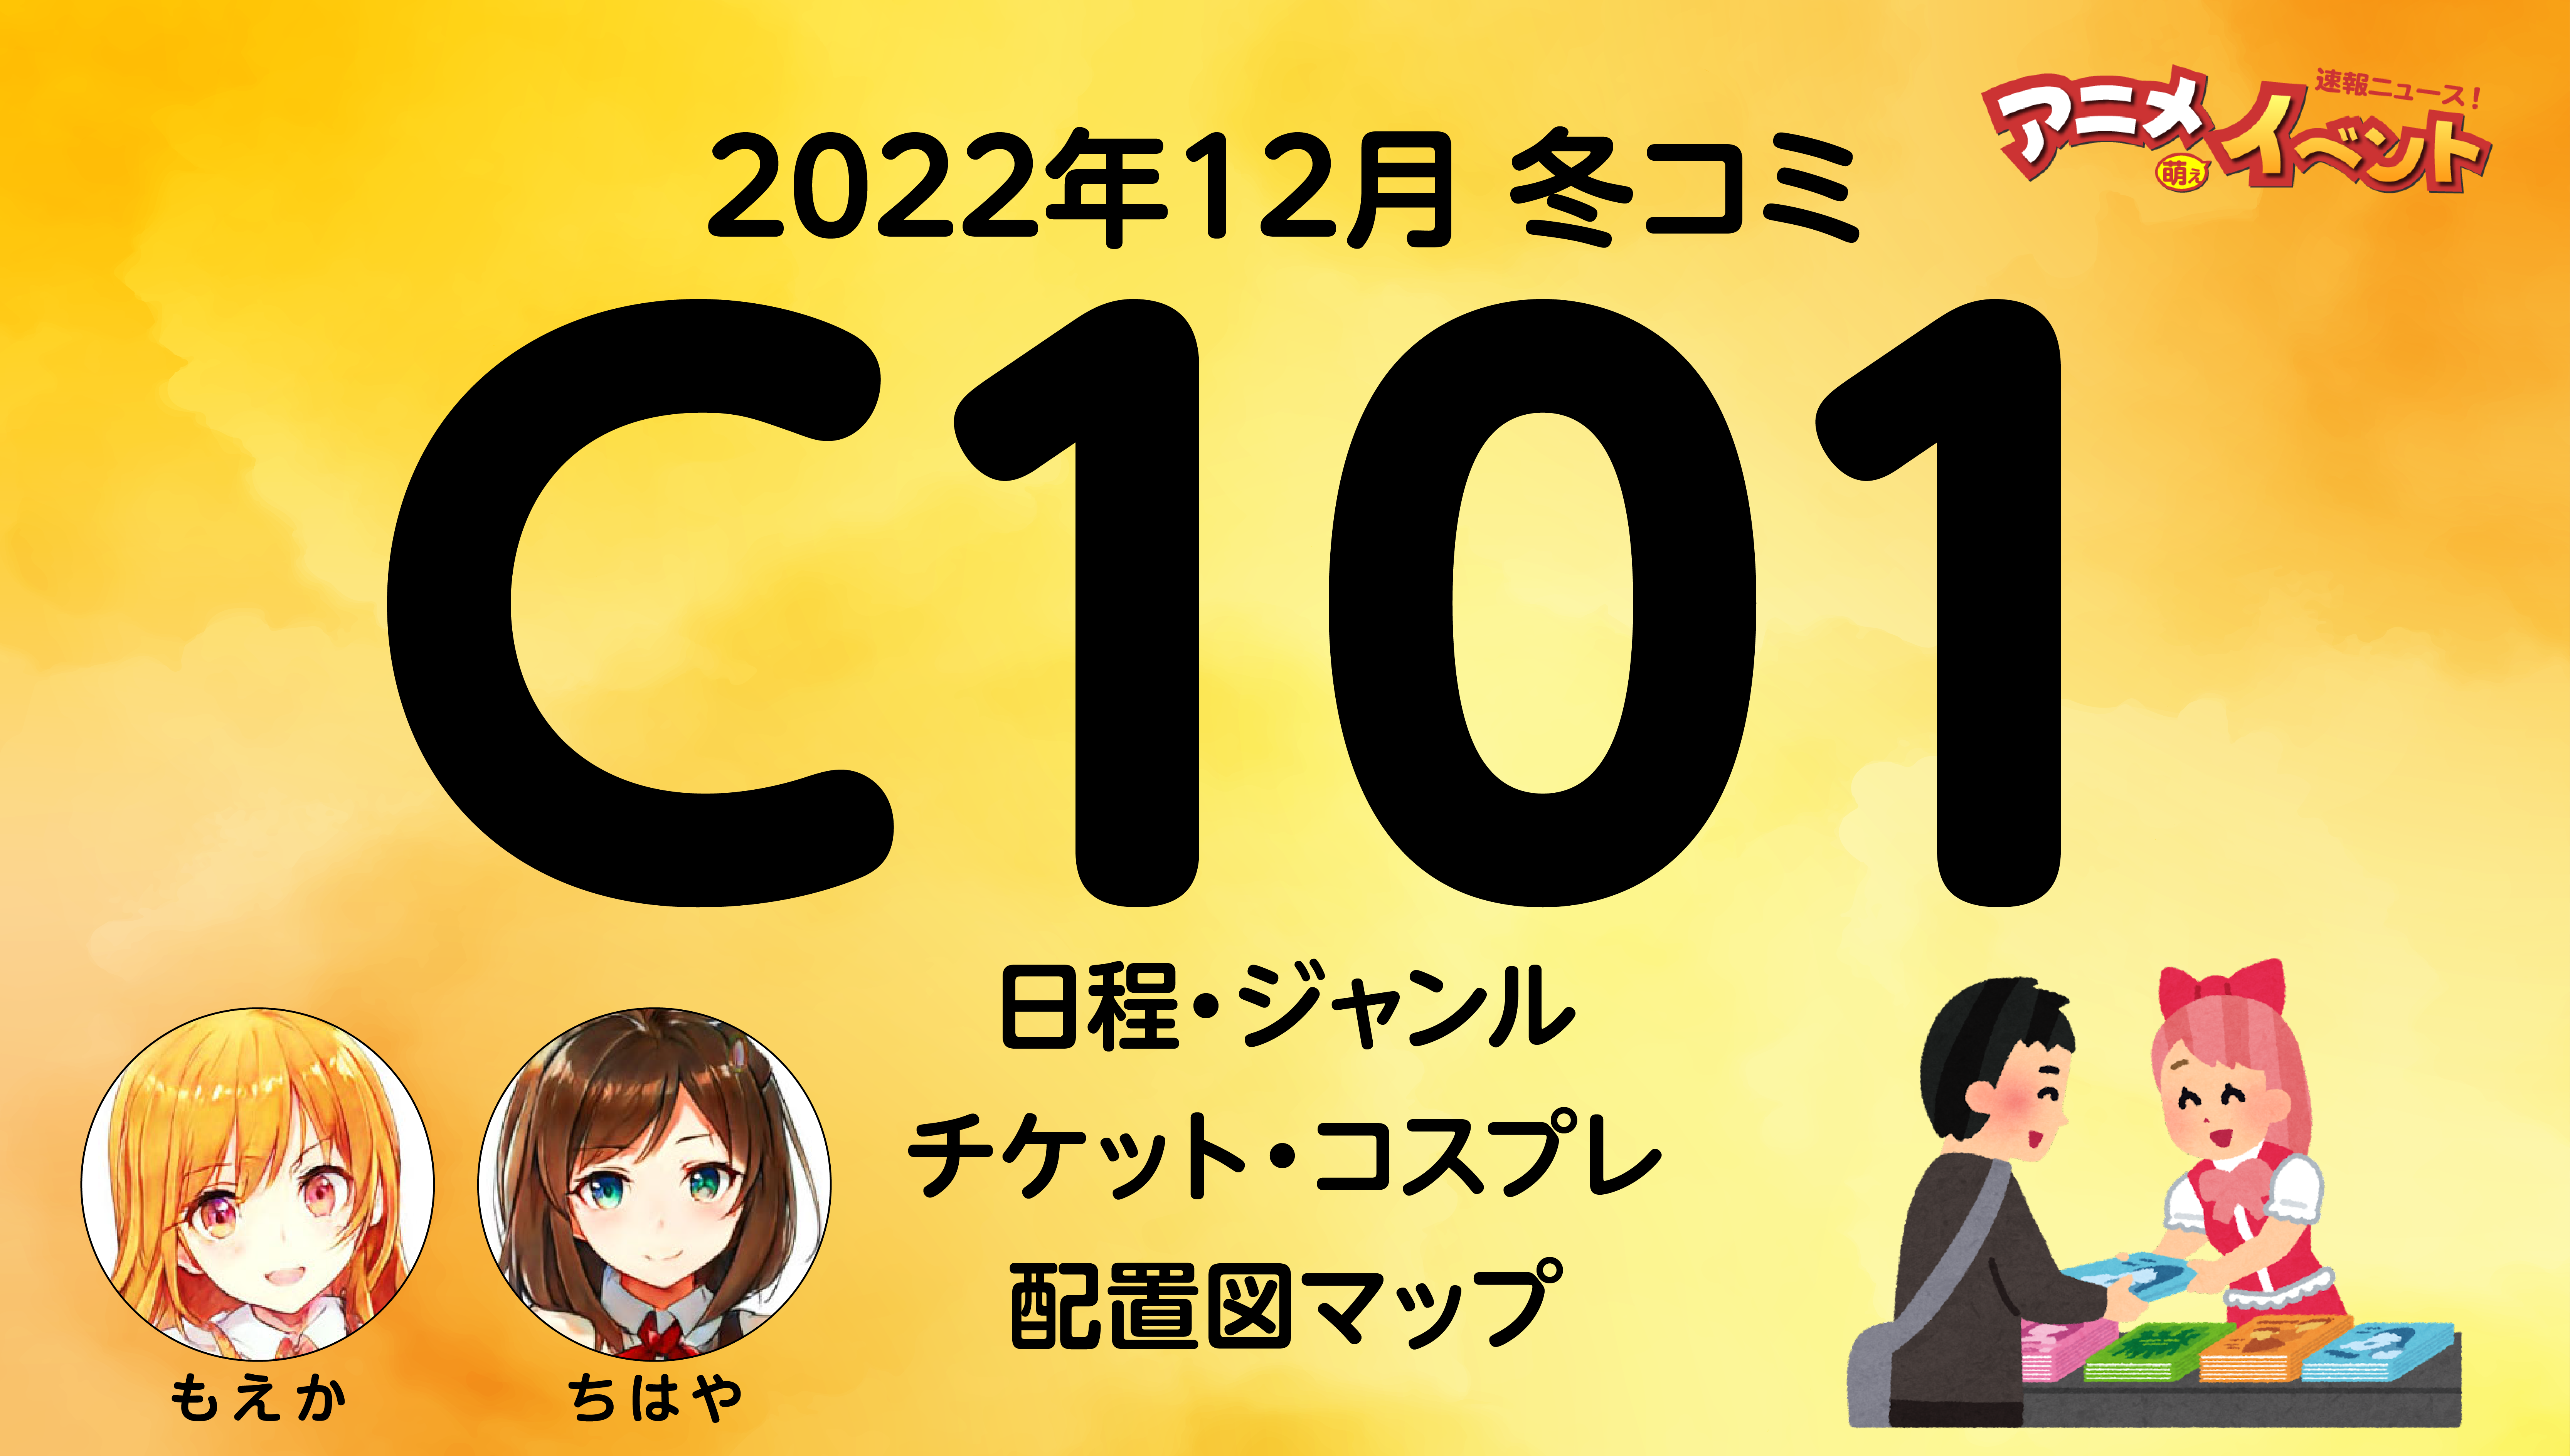 C101コミケ（2022年12月）情報まとめ　『コミックマーケット100』日程・ジャンル・チケット・マップ・コスプレ